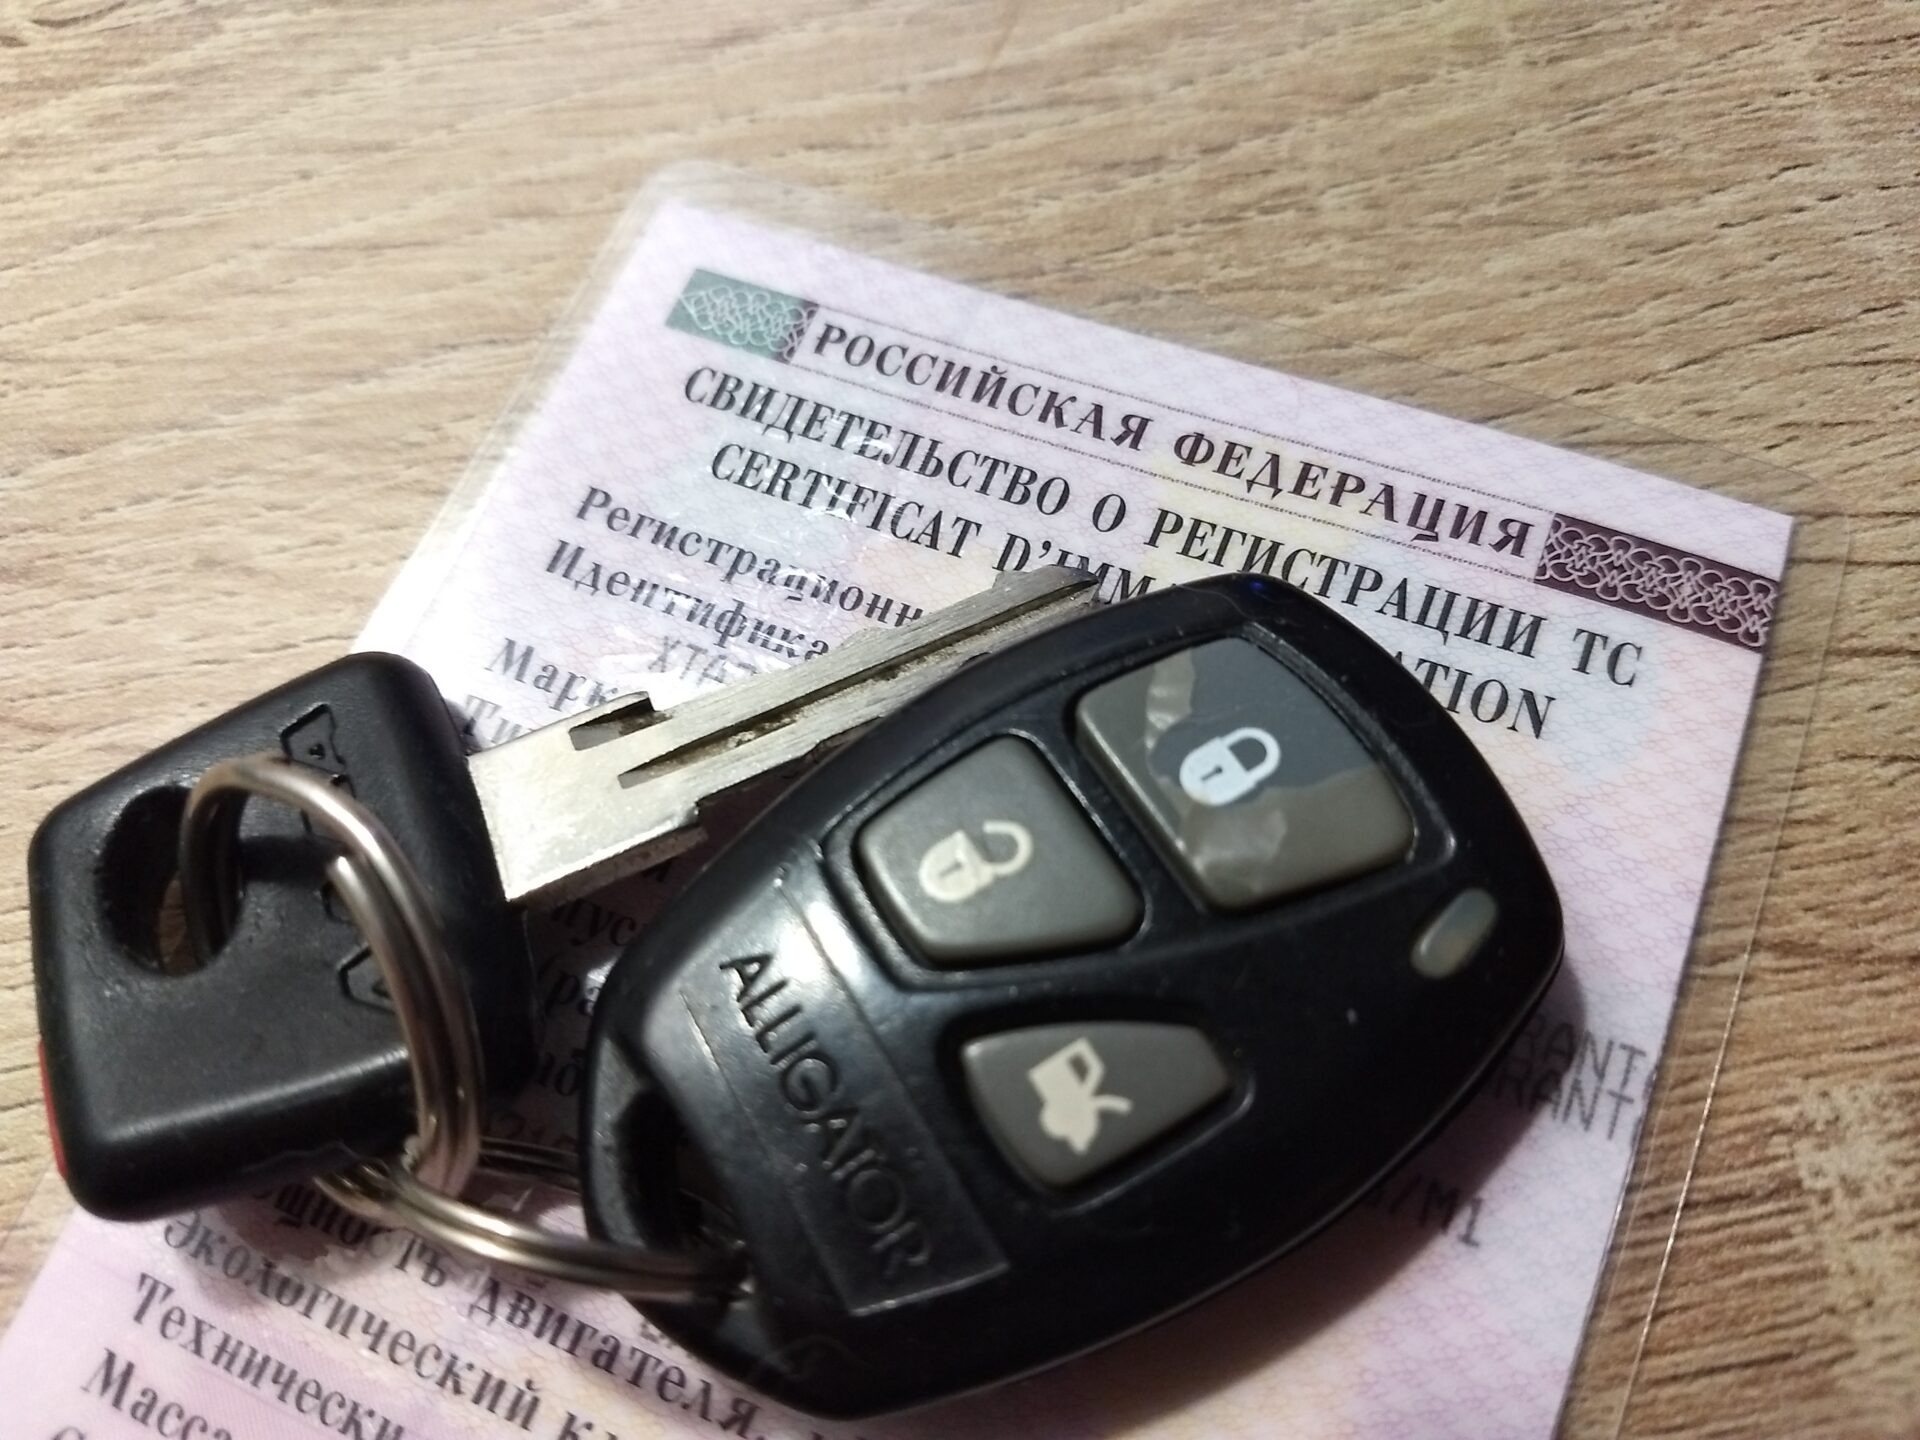 Россиянам перечислили 4 законных способов продать автомобиль с ограничениями